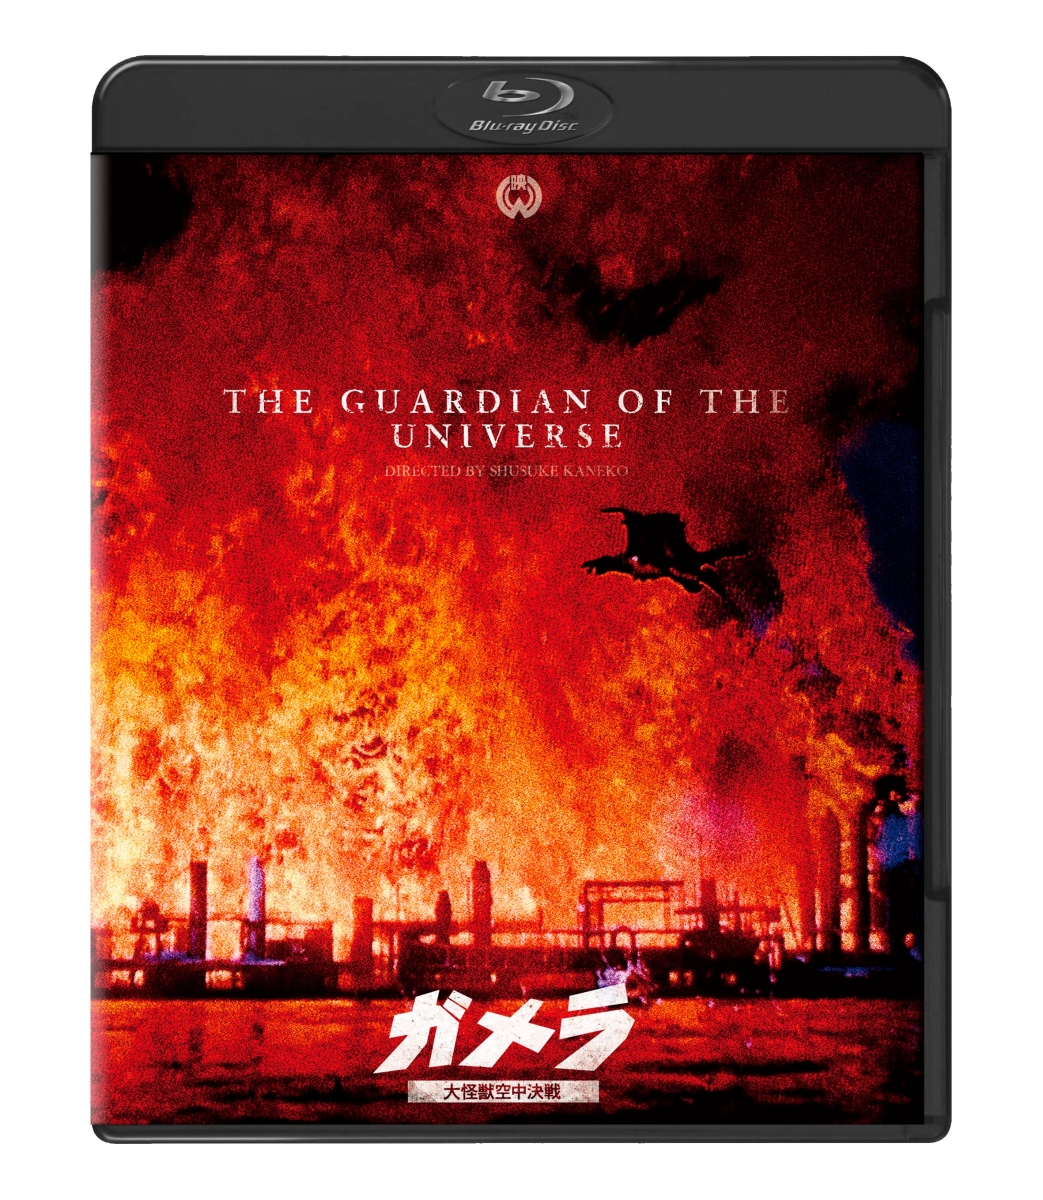 『ガメラ 大怪獣空中決戦』 4Kデジタル復元版Blu-ray【Blu-ray】 [ 伊原剛志 ]画像